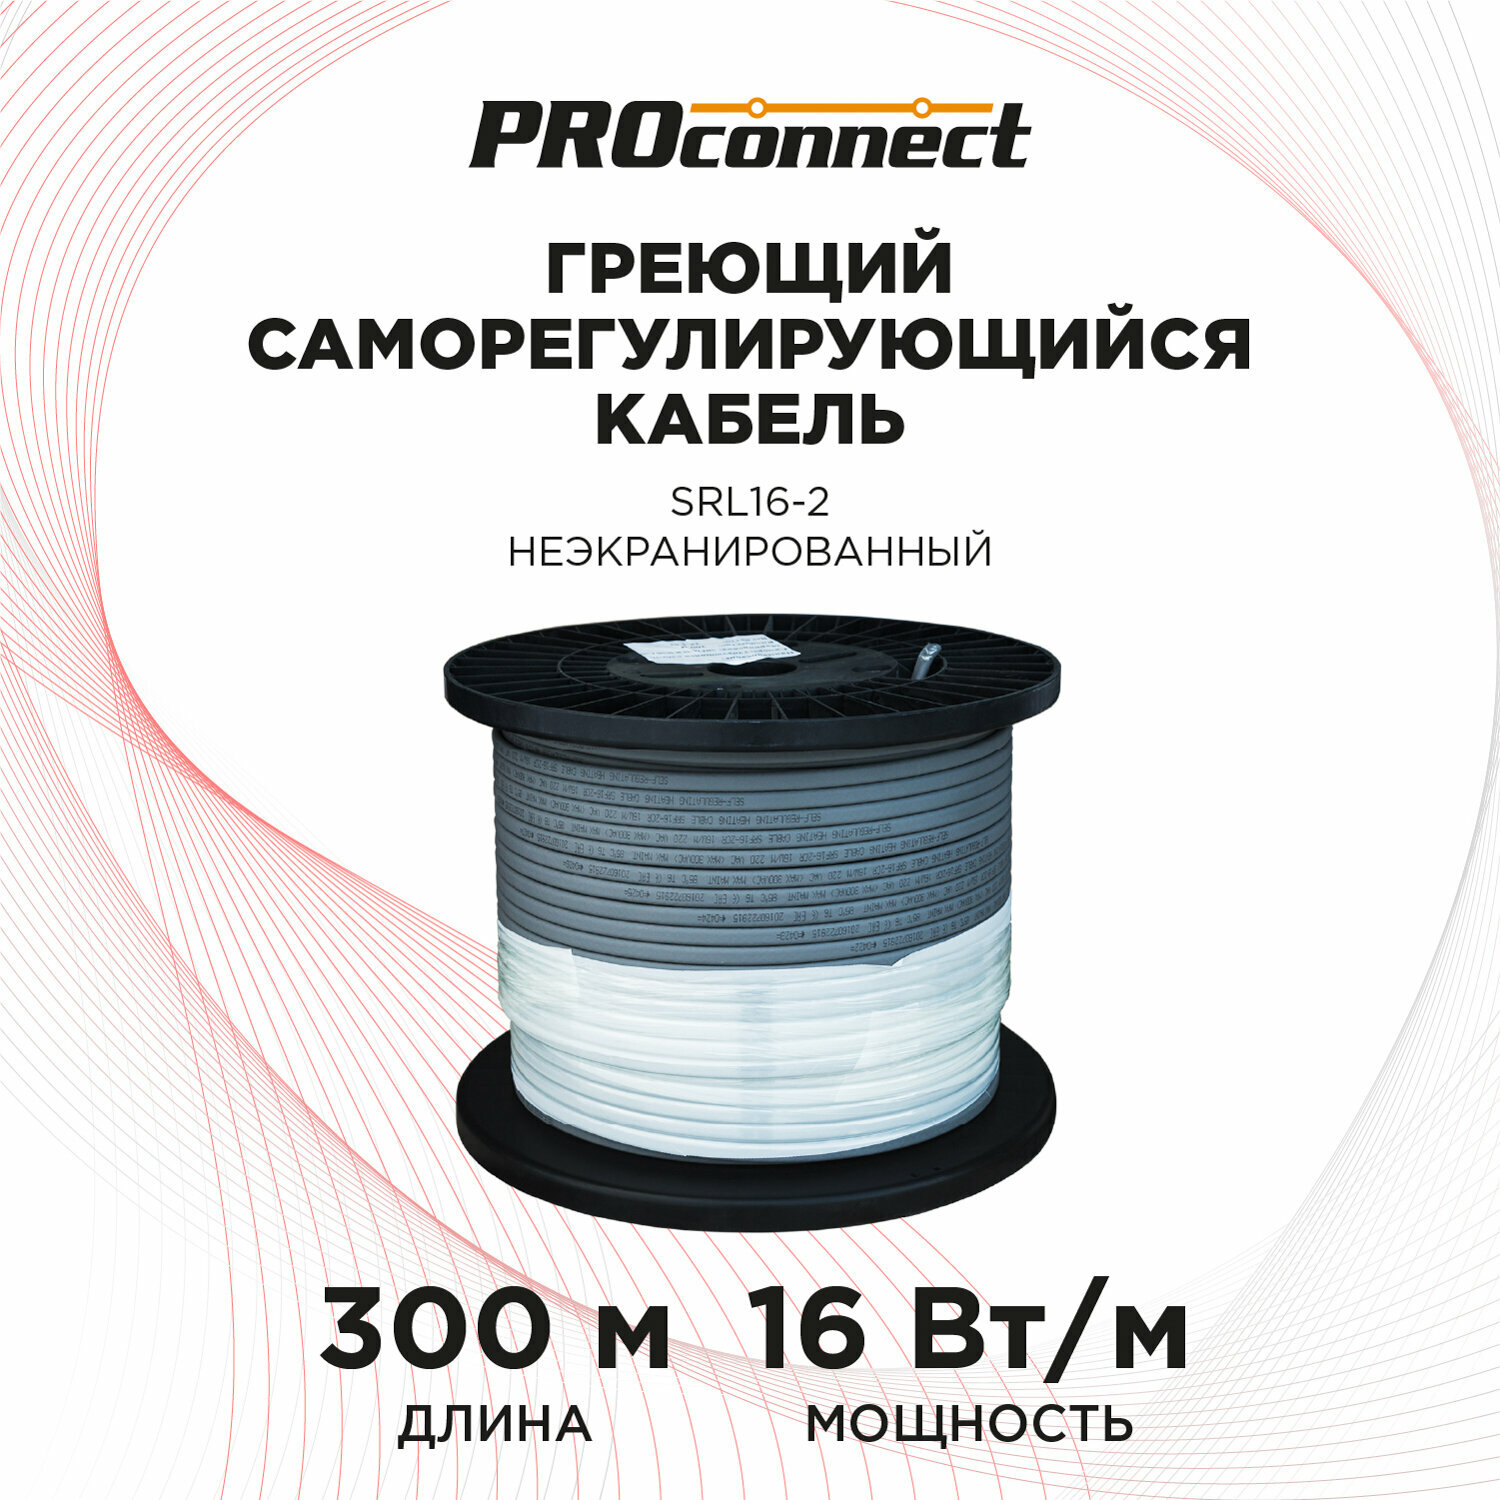 Саморегулируемый греющий кабель SRL16-2 неэкранированный 16 Вт/1 м, бухта 300 м PROCONNECT